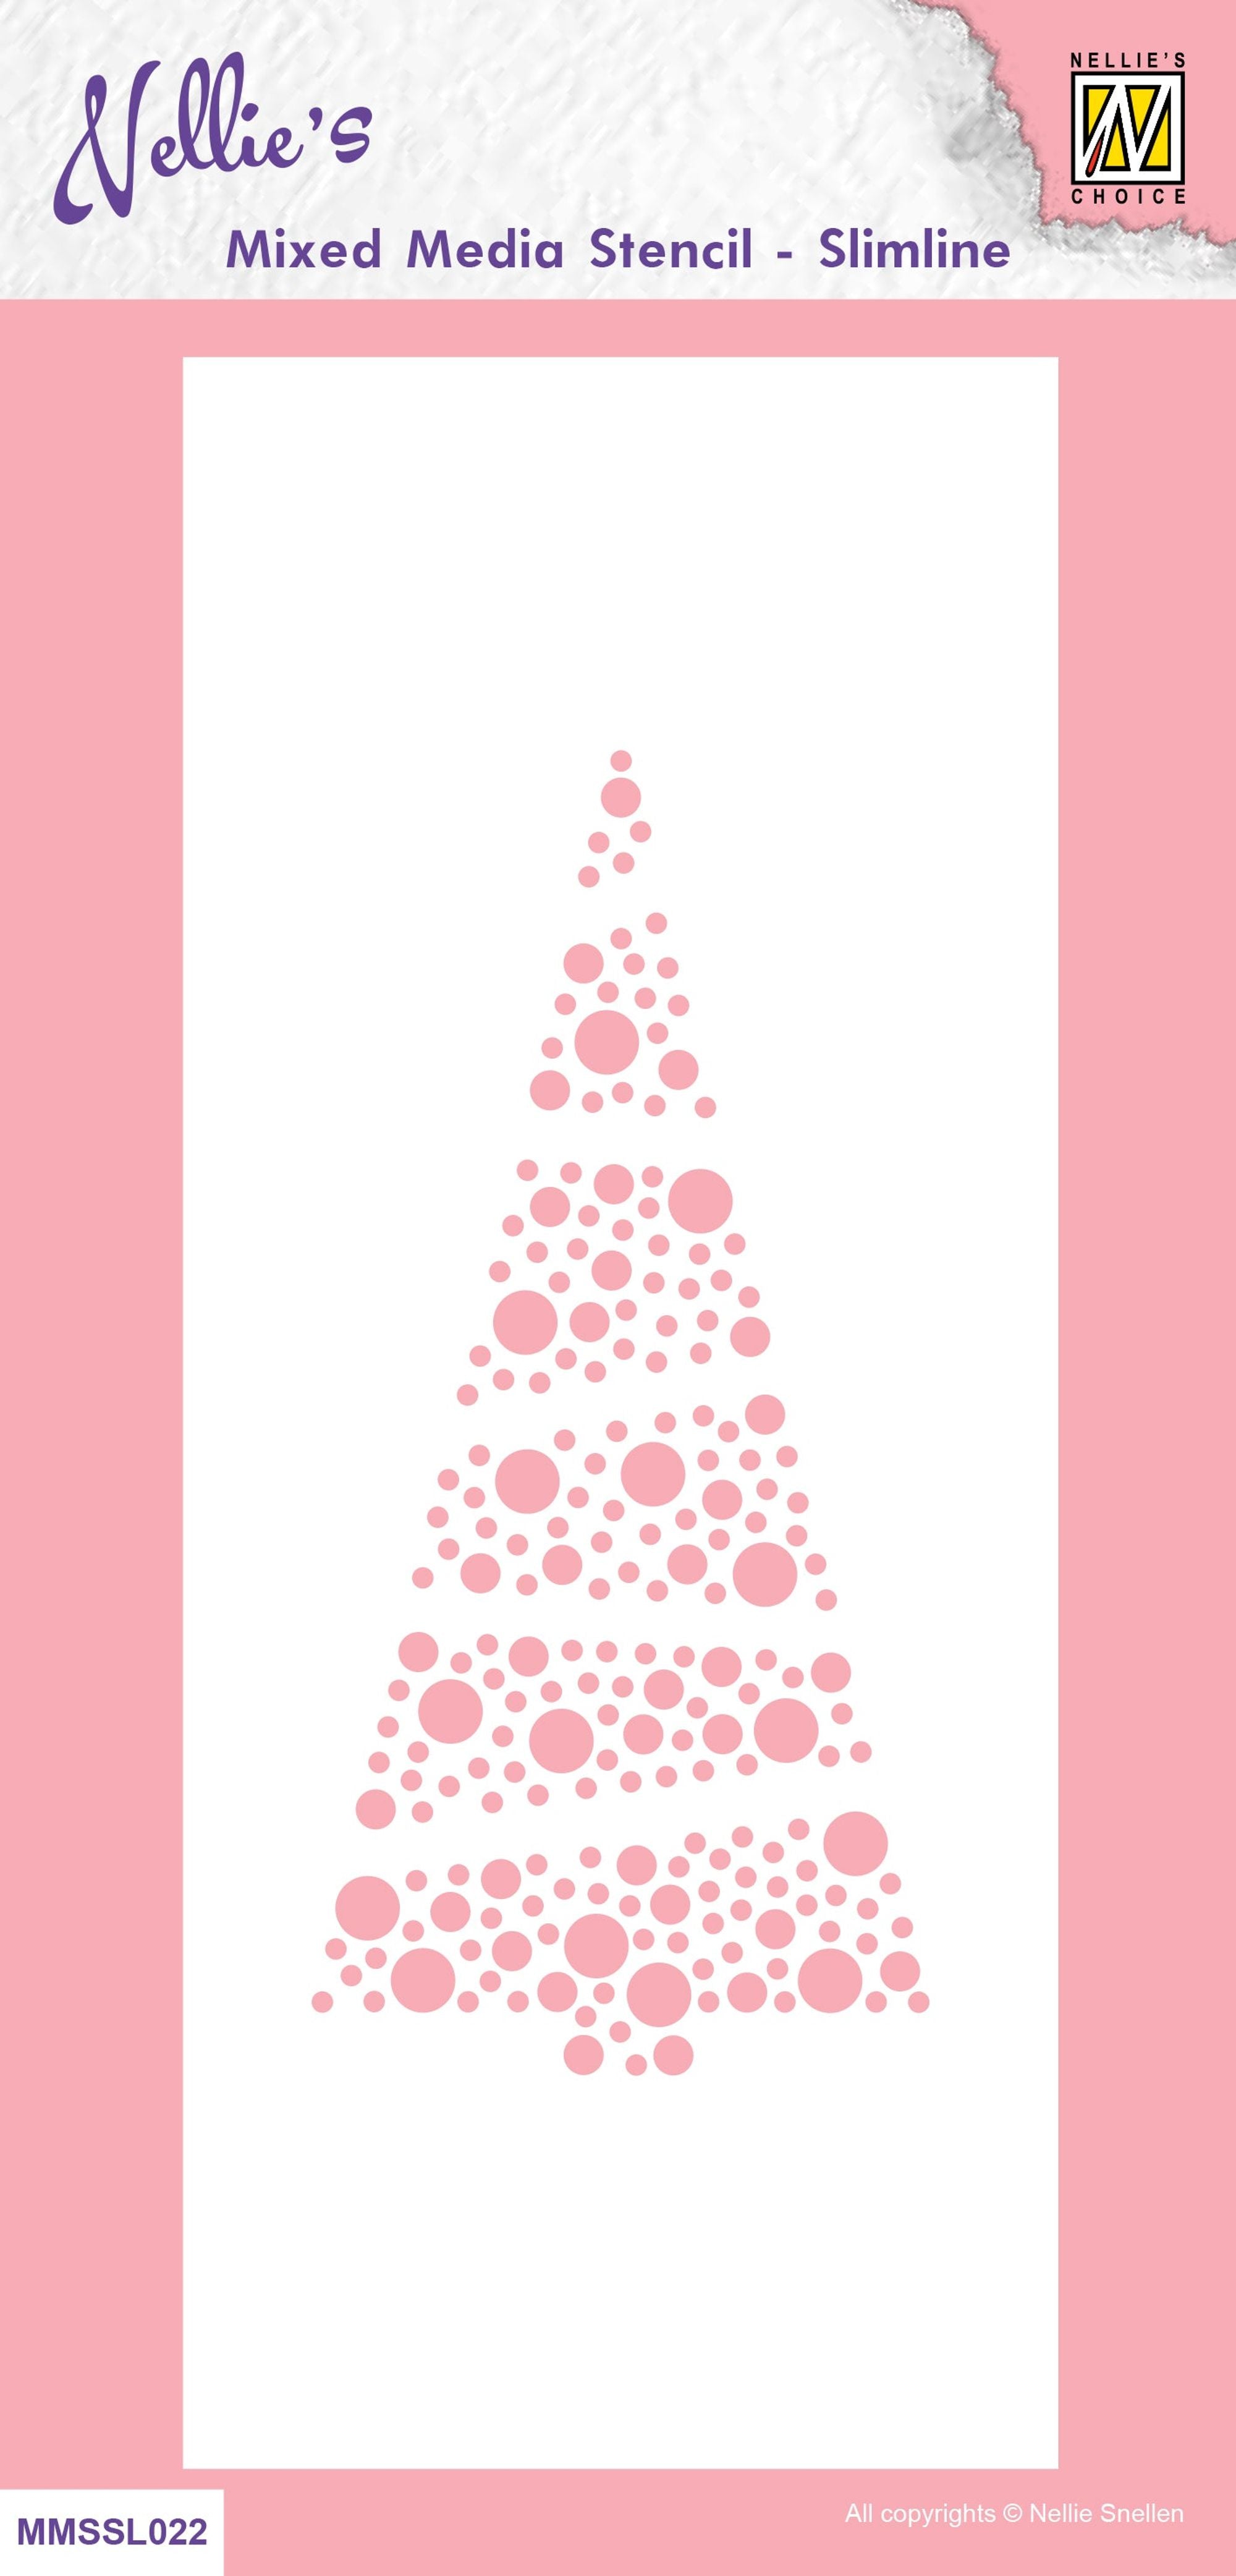 Nellie's Choice Mixed Media Stencil - Slim Line - Christmas Tree